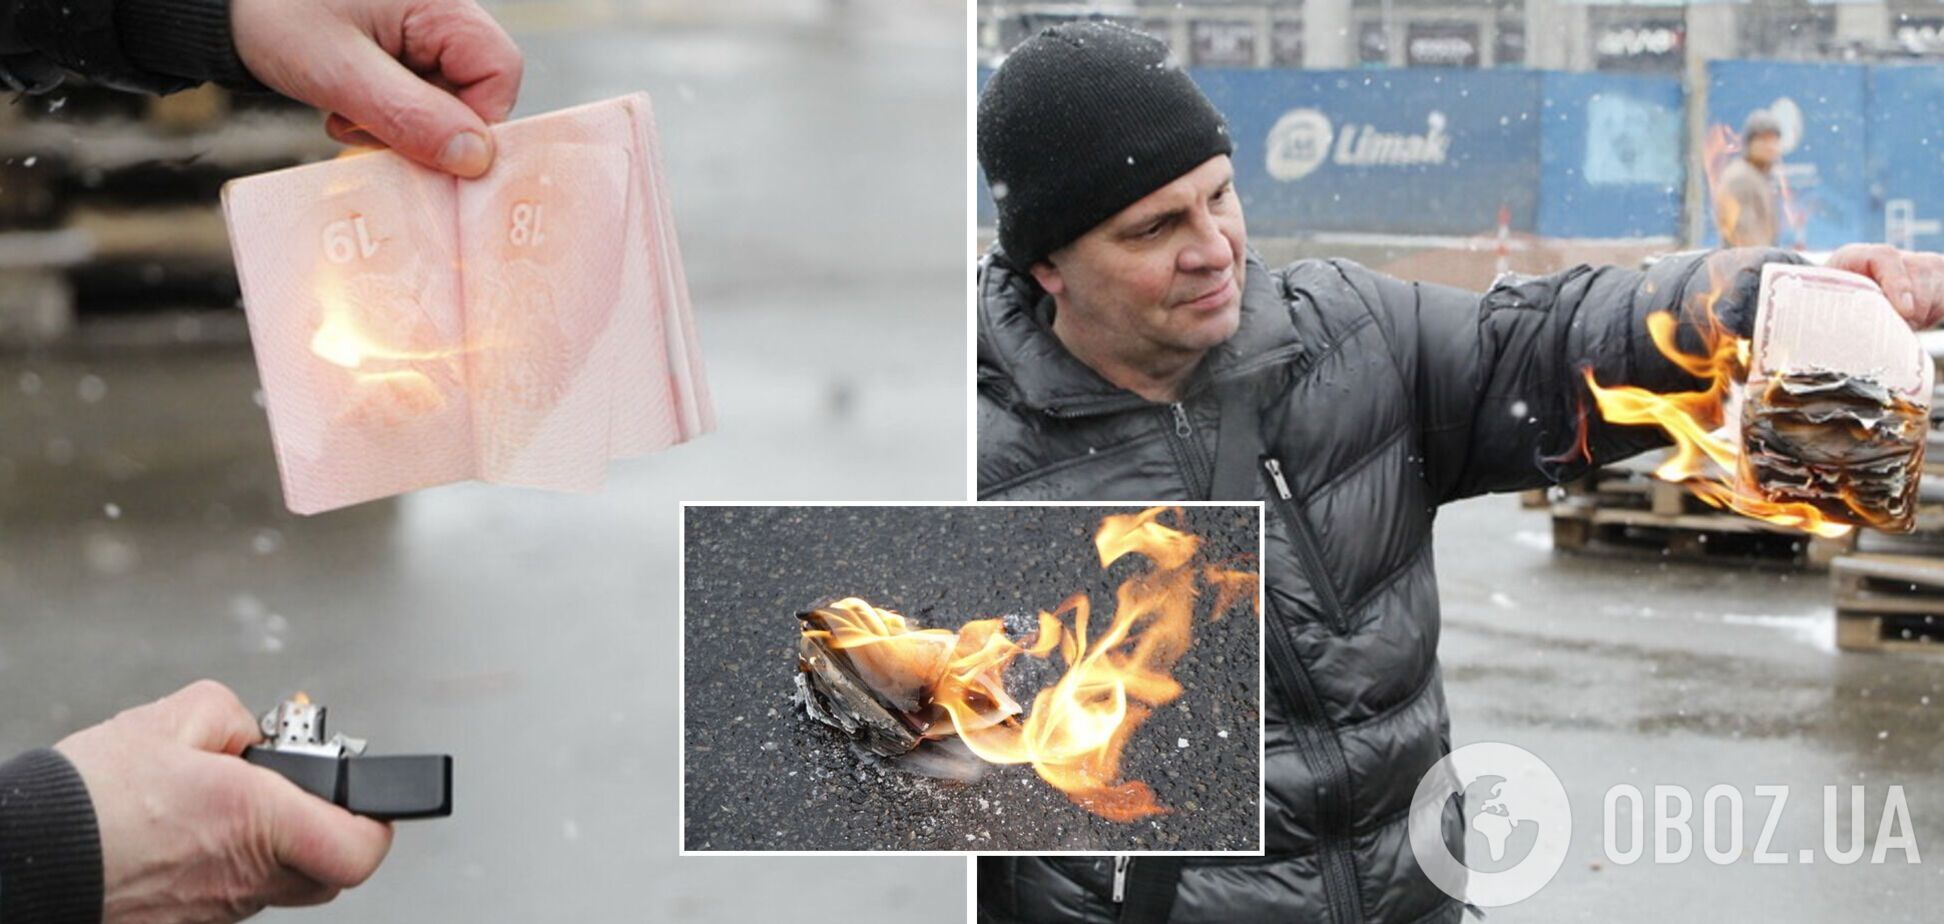  Василишин сжег свой паспорт